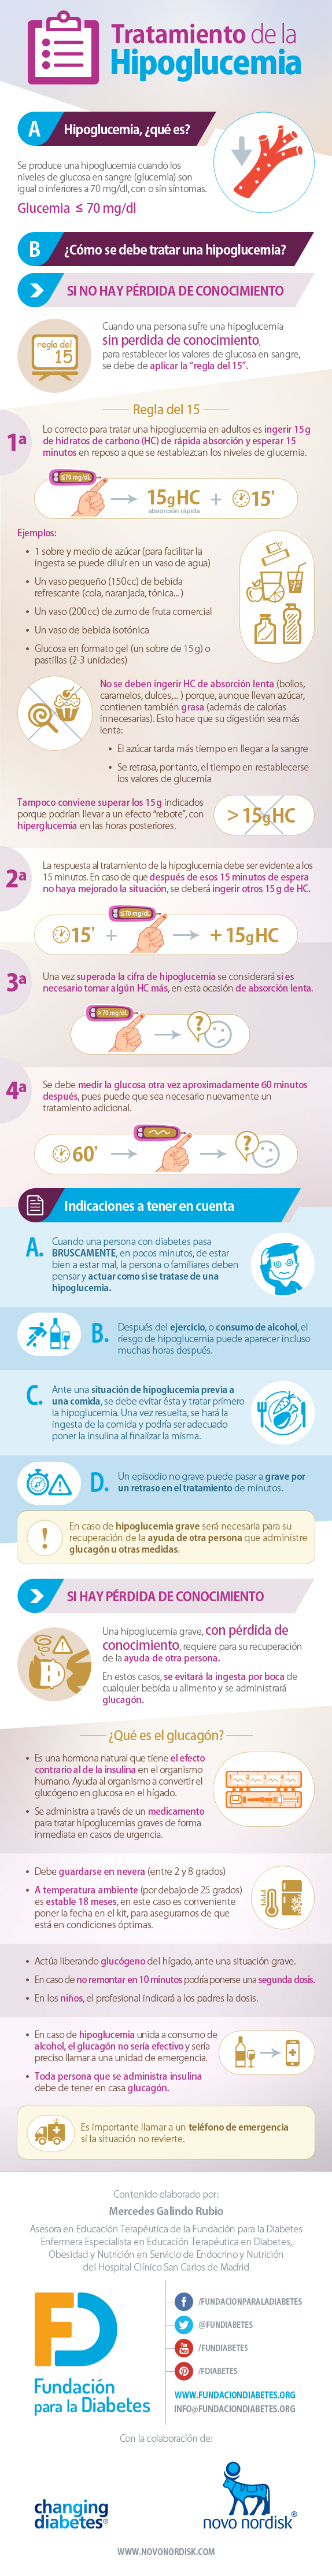 Infografía Tratamiento de la hipoglucemia